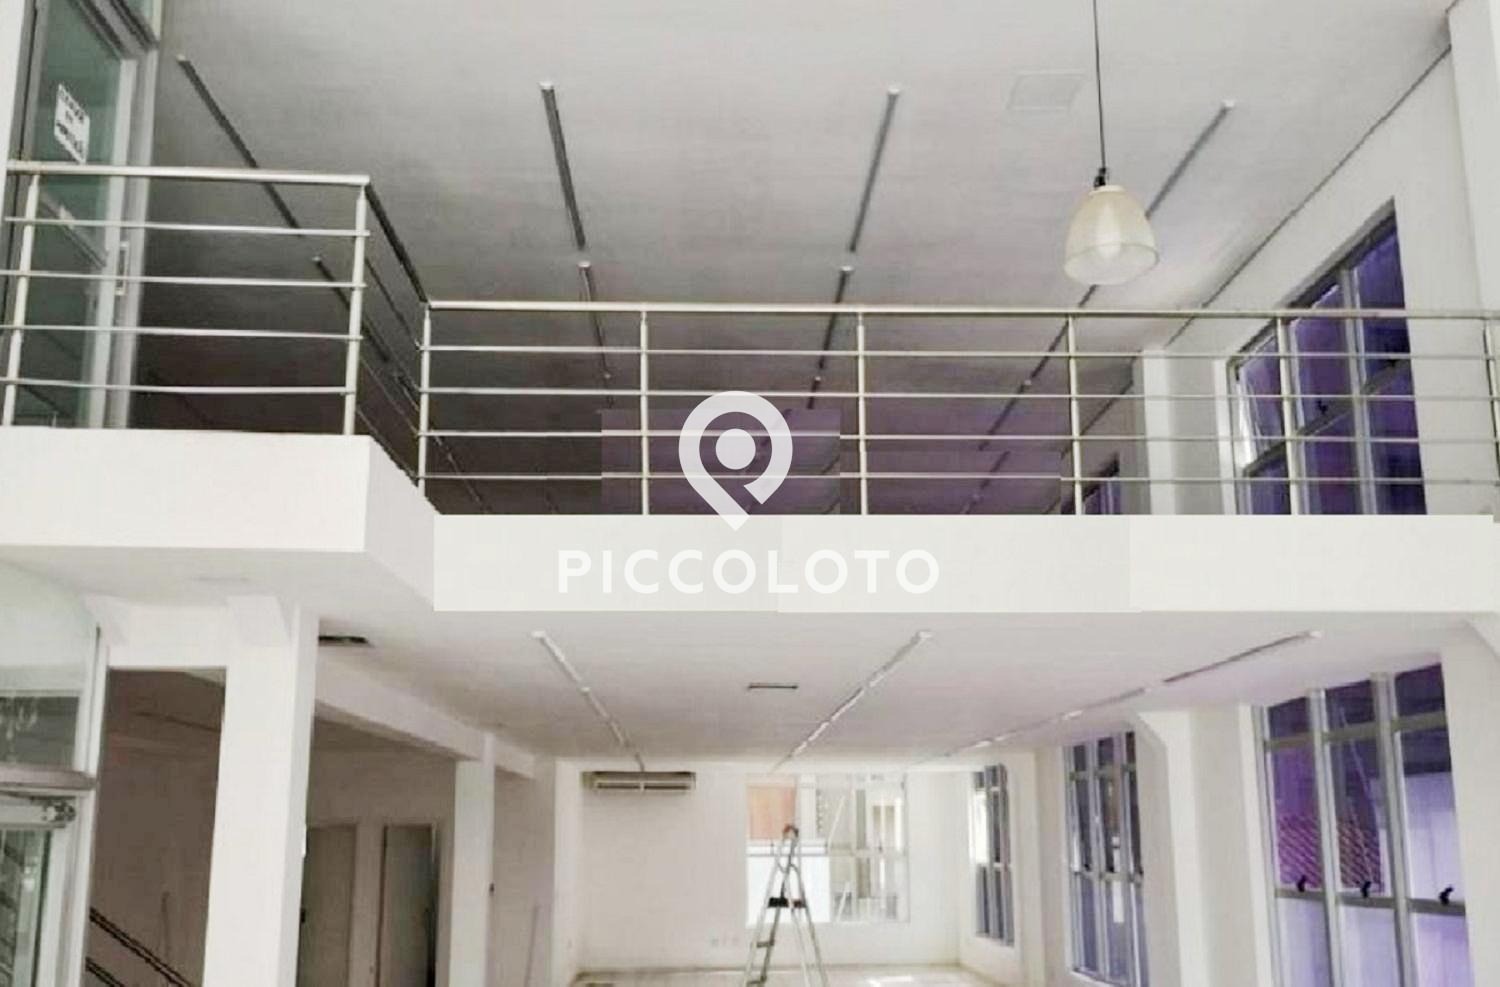 Piccoloto -Salão à venda no Cambuí em Campinas